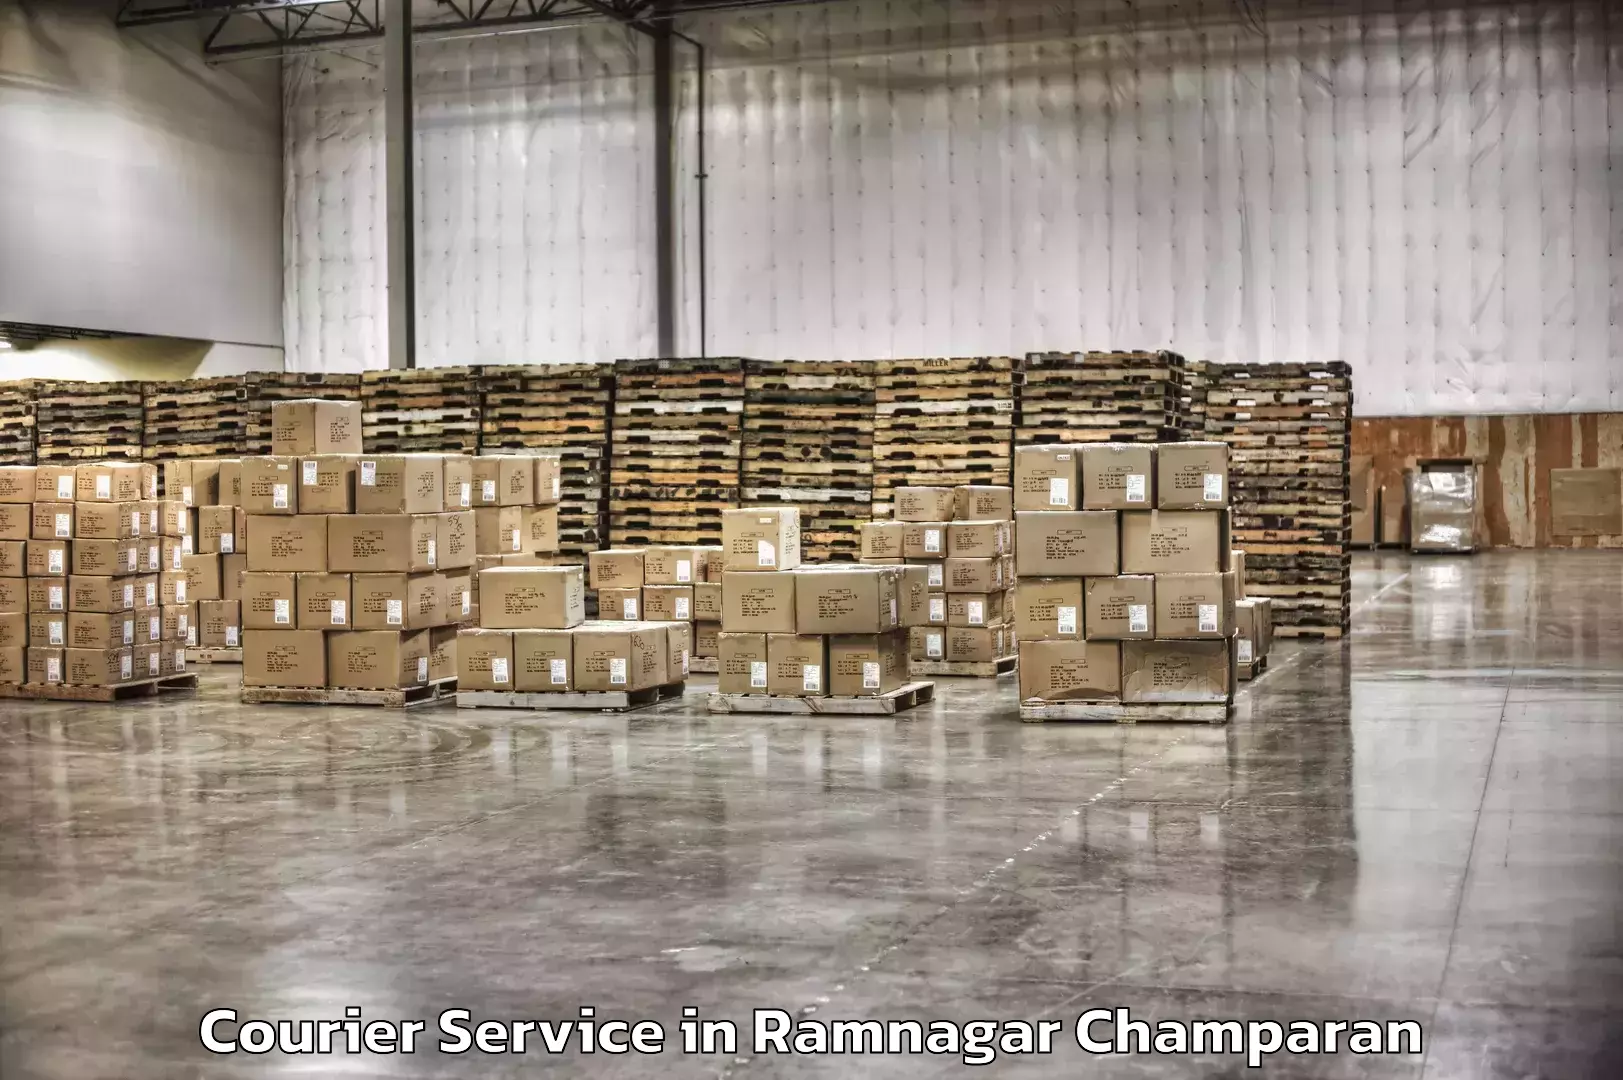 Cross-border shipping in Ramnagar Champaran